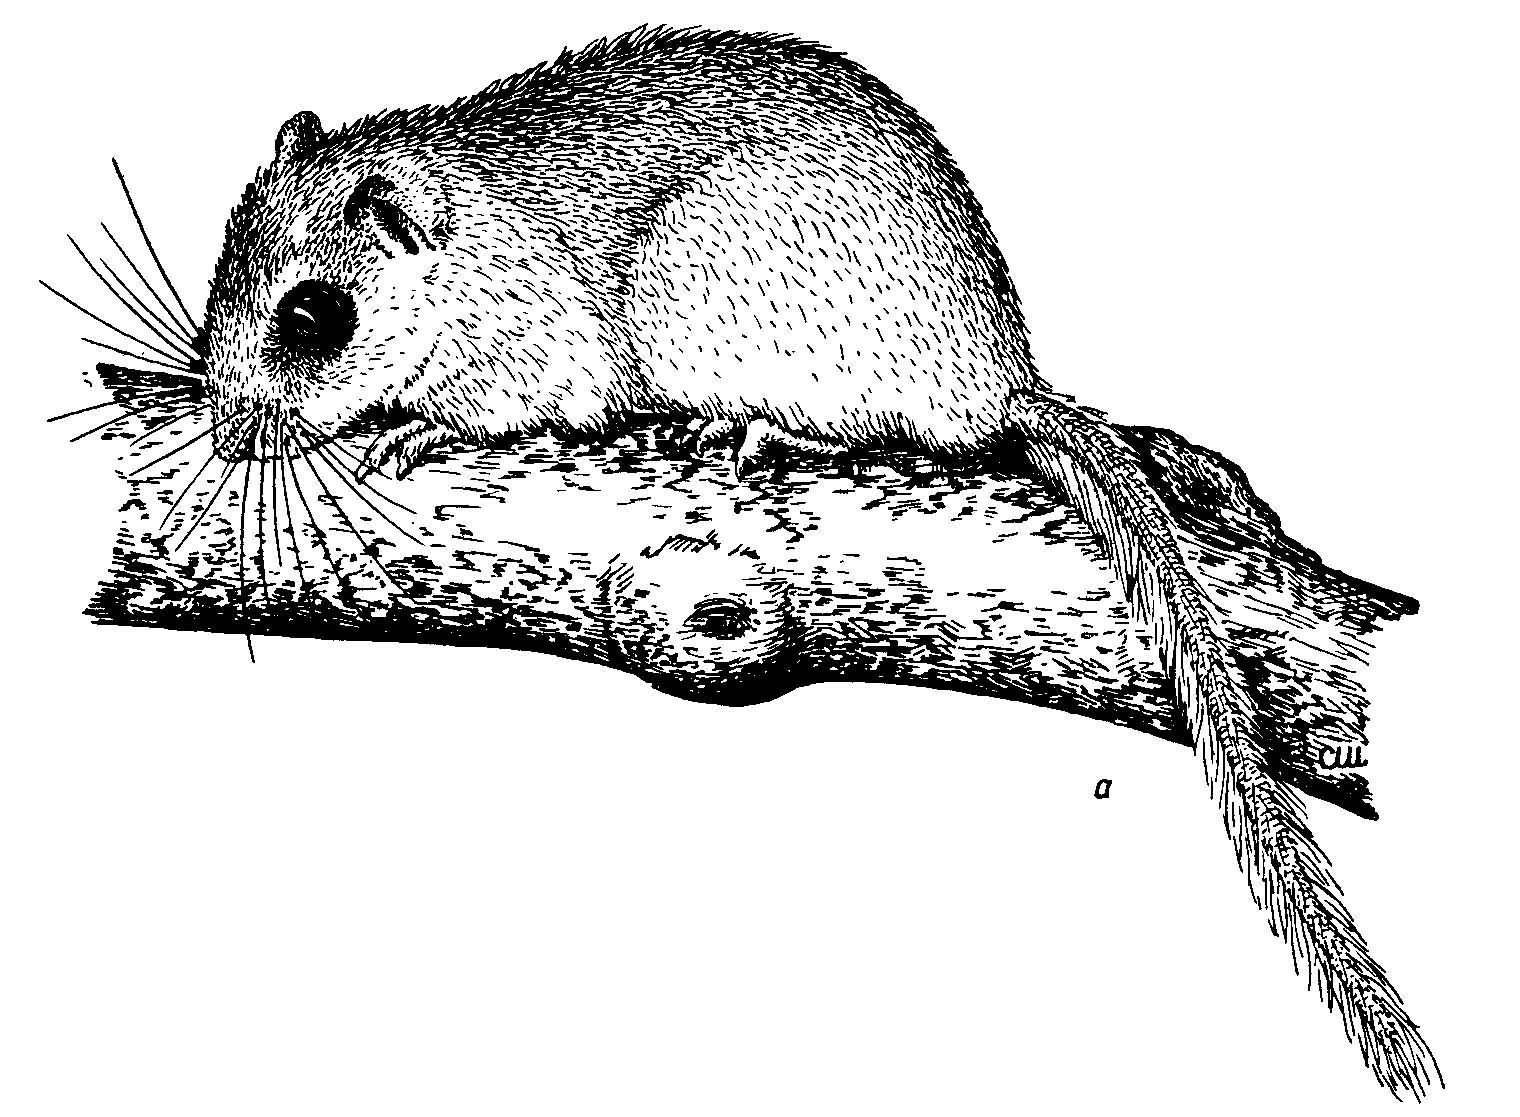 Рис. 4. Соневидный центральноамериканский хомяк Nyctomys sumichrasti.
